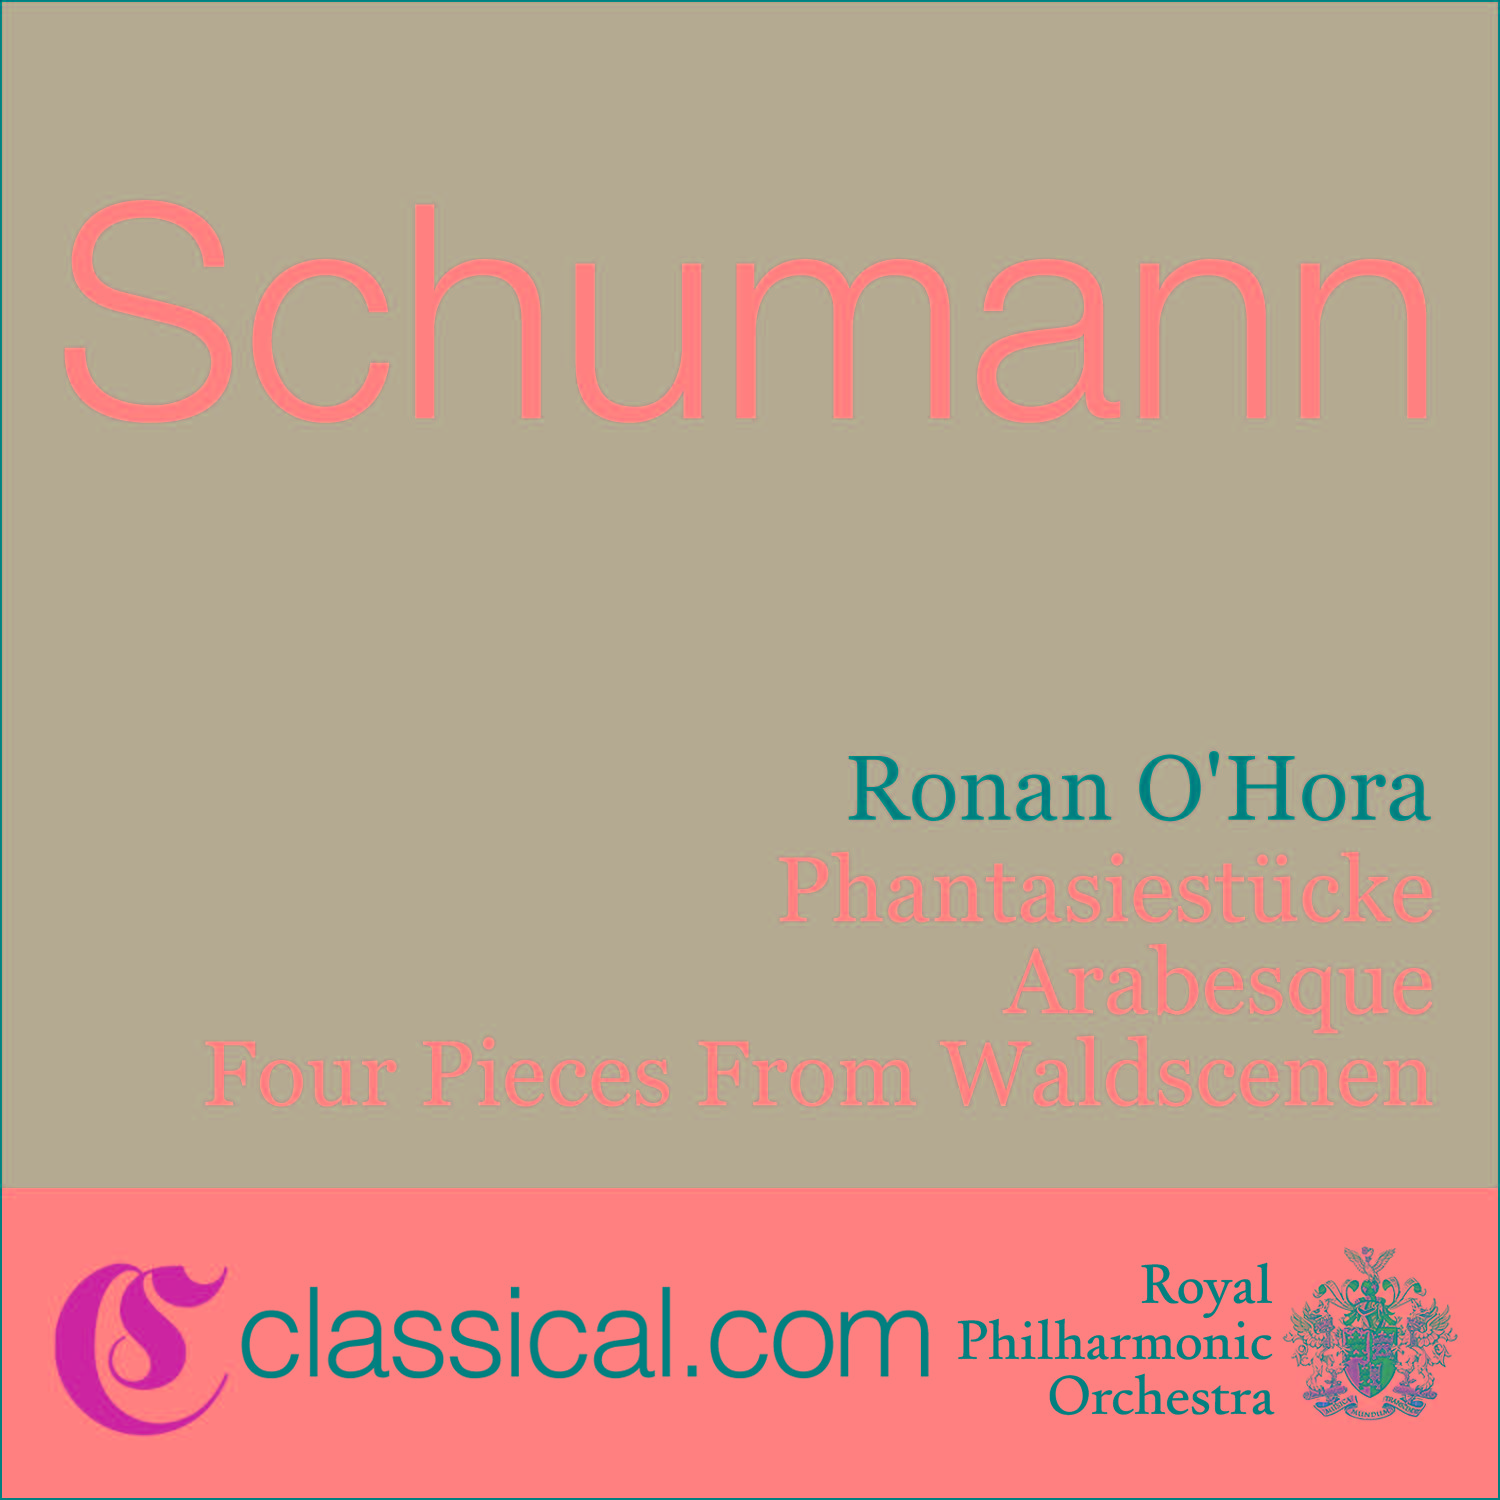 Robert Schumann, Phantasiestücke, Op. 12